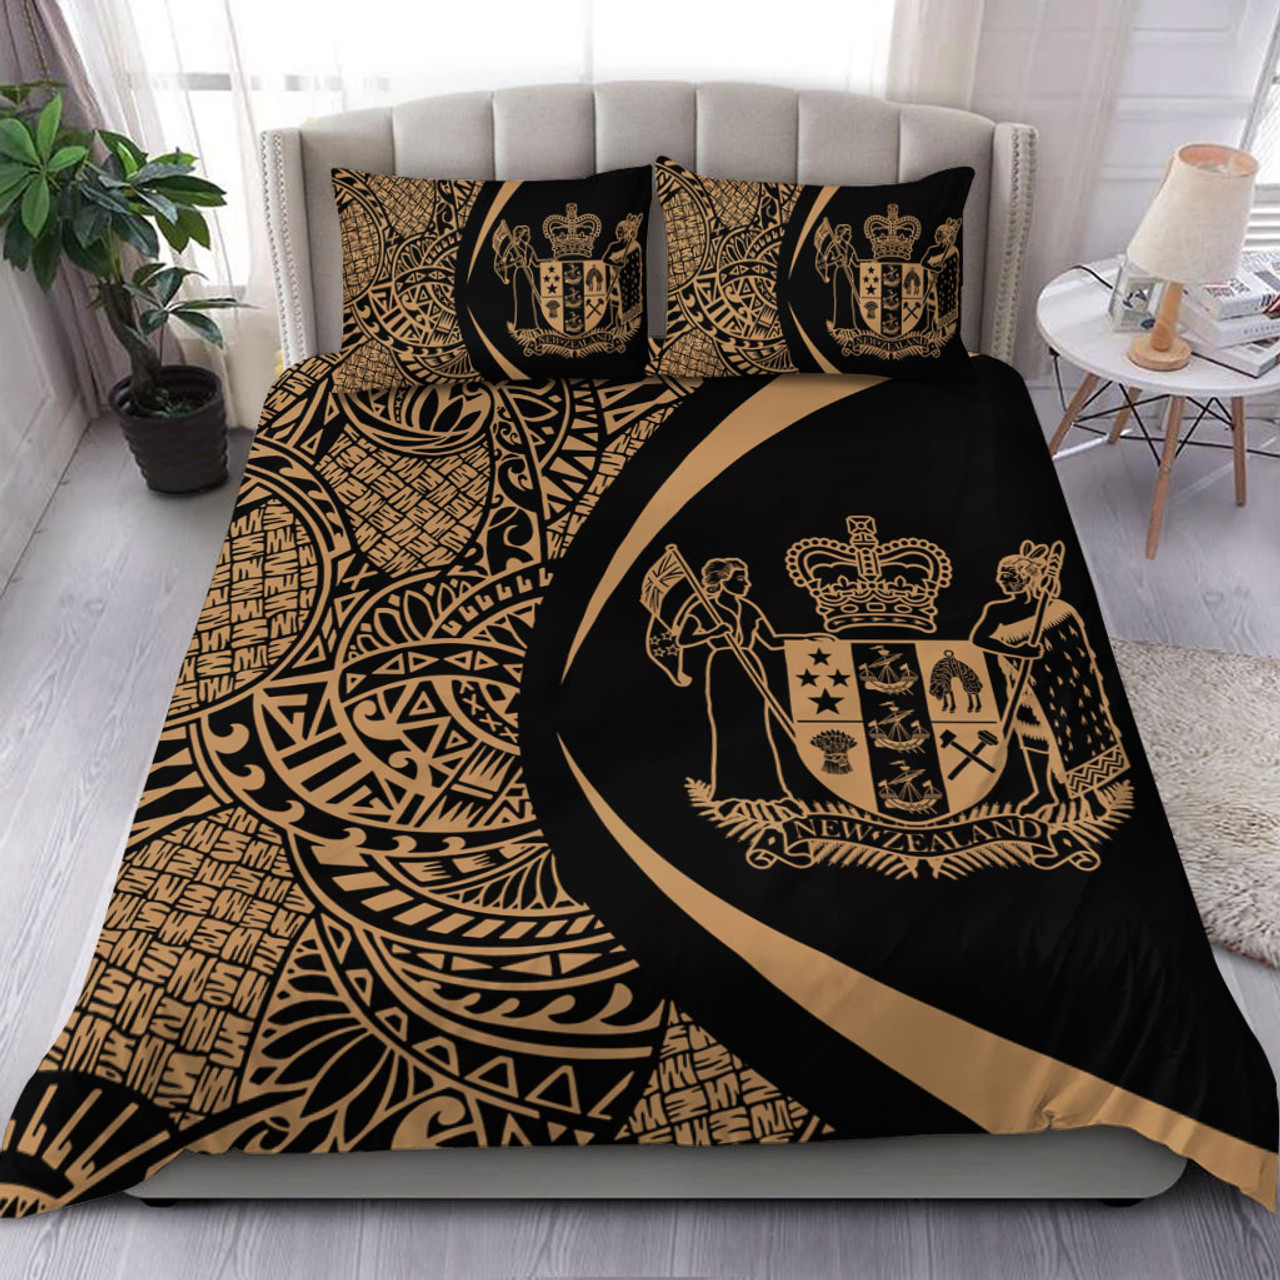 New Zealand Bedding Set Lauhala Gold Circle Style